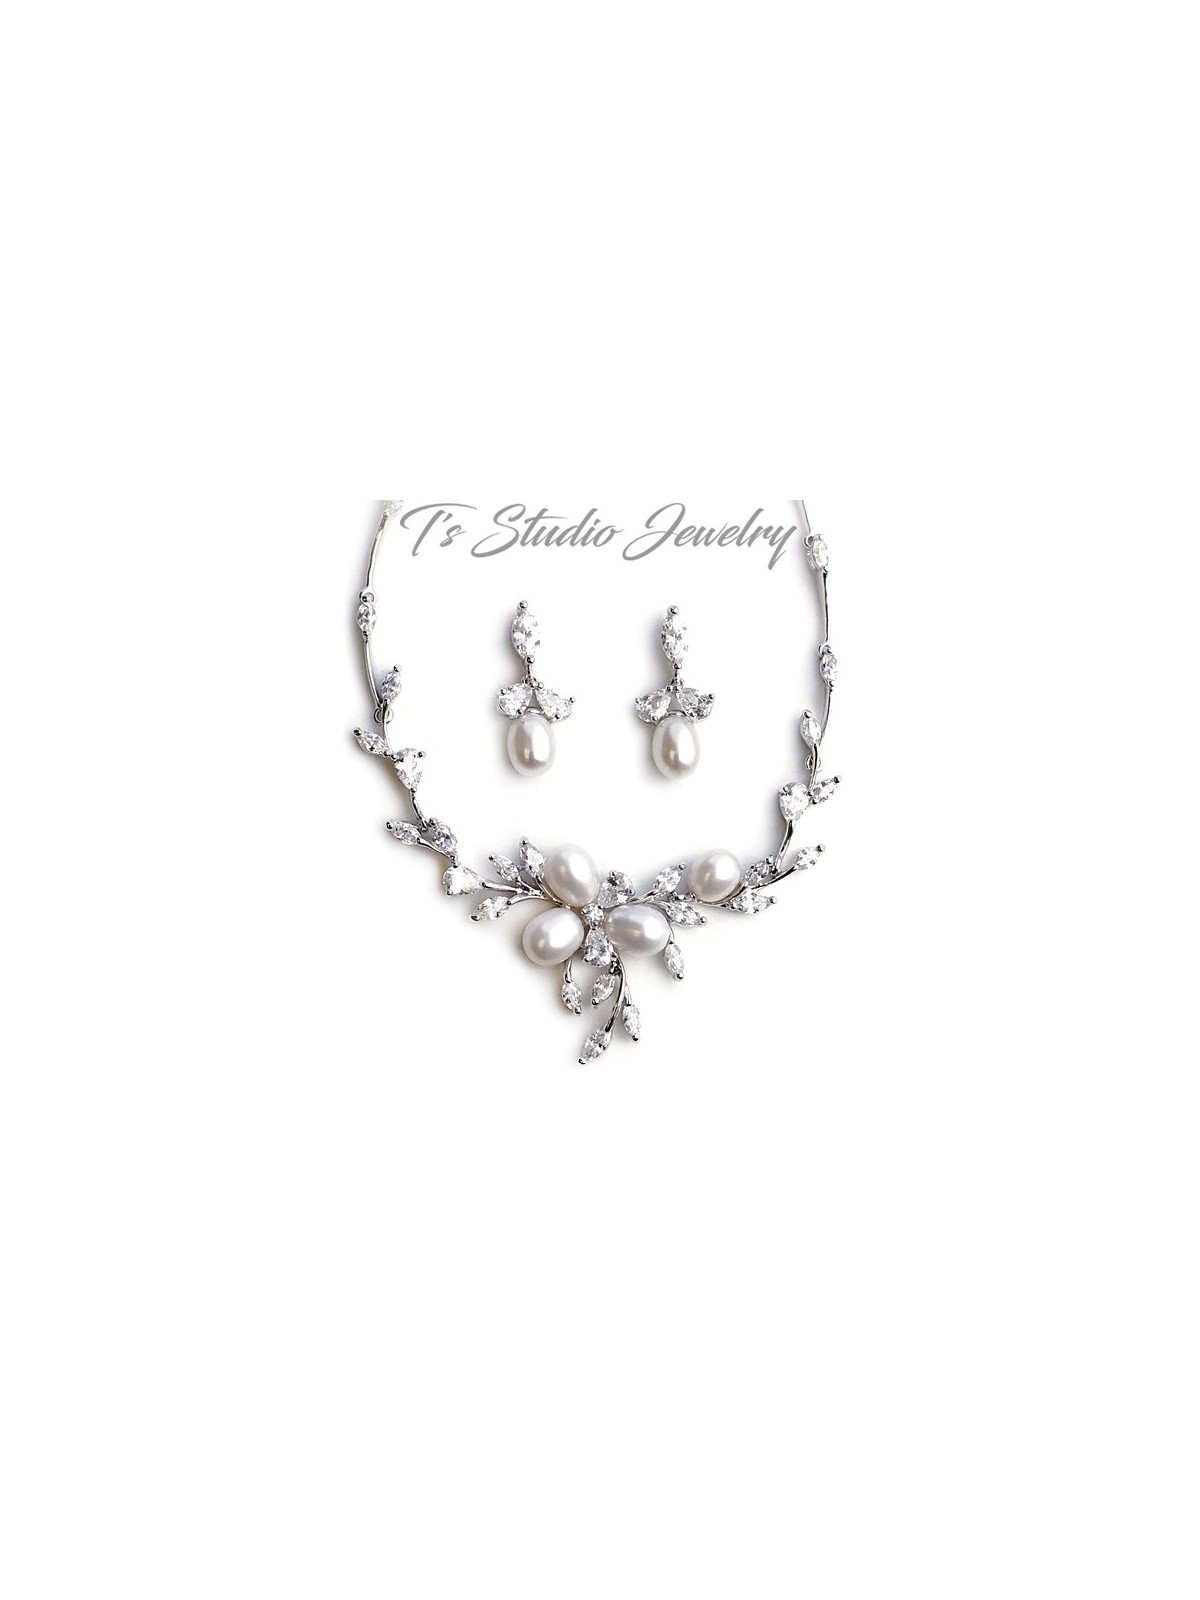 Freshwater Pearl Necklace Earrings Bracelet Bridal Jewelry Set